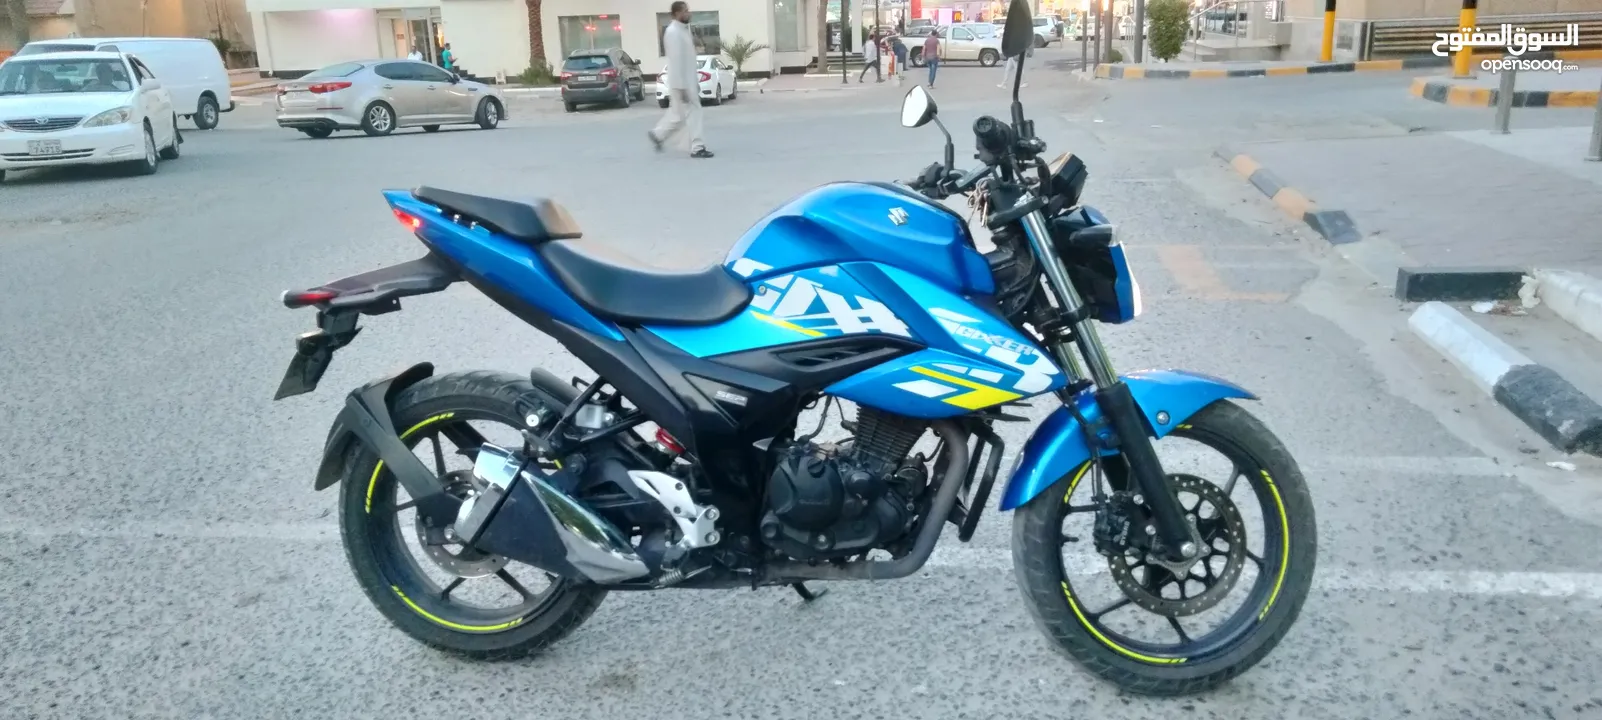 Suzuki gixxer 150c motorcycle